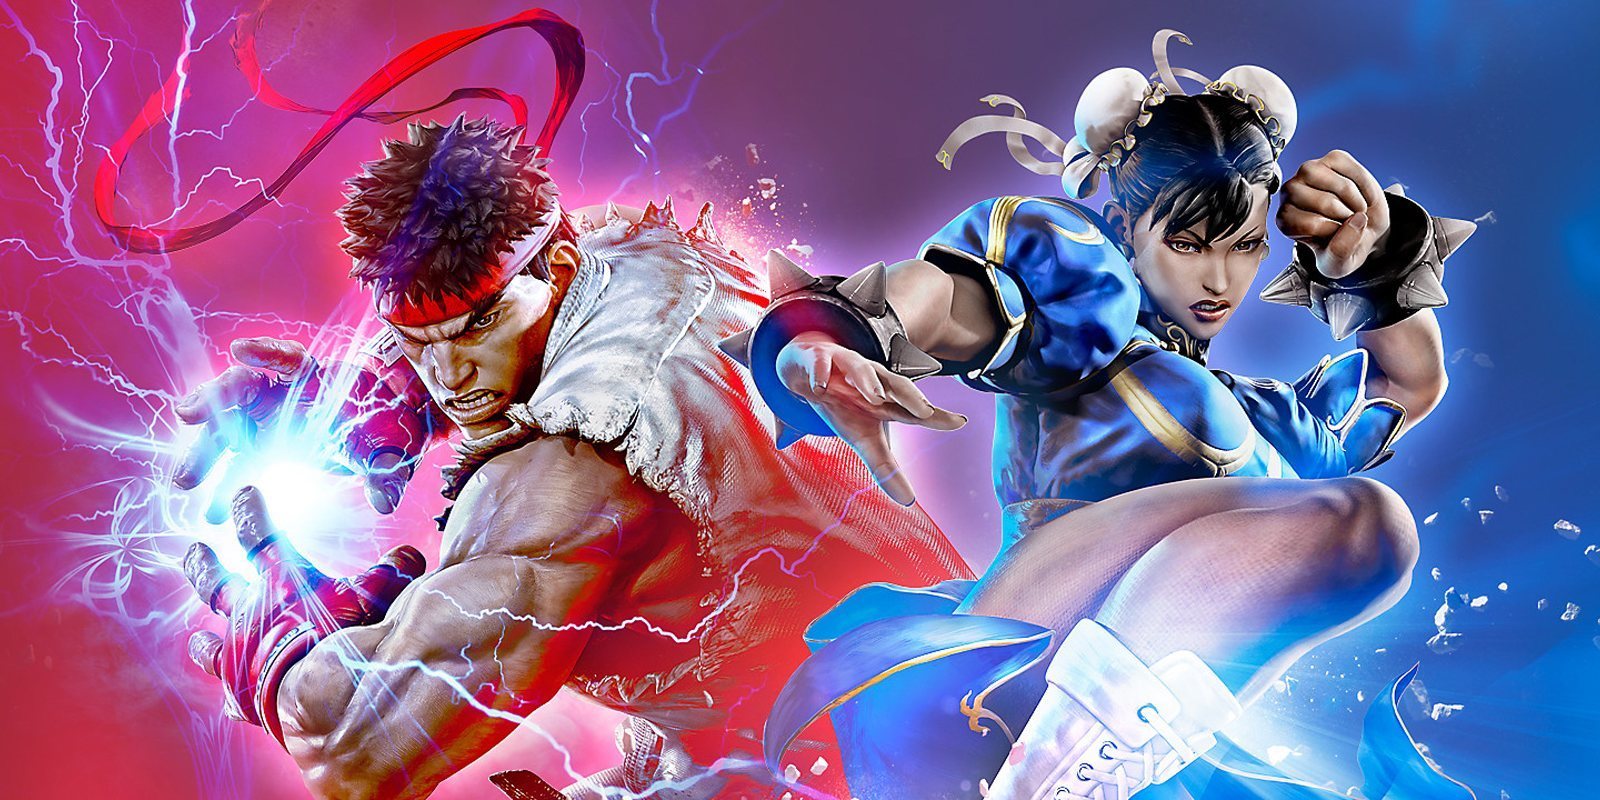 Análisis de 'Street Fighter V: Champion Edition' para PS4, lo mejor de la saga